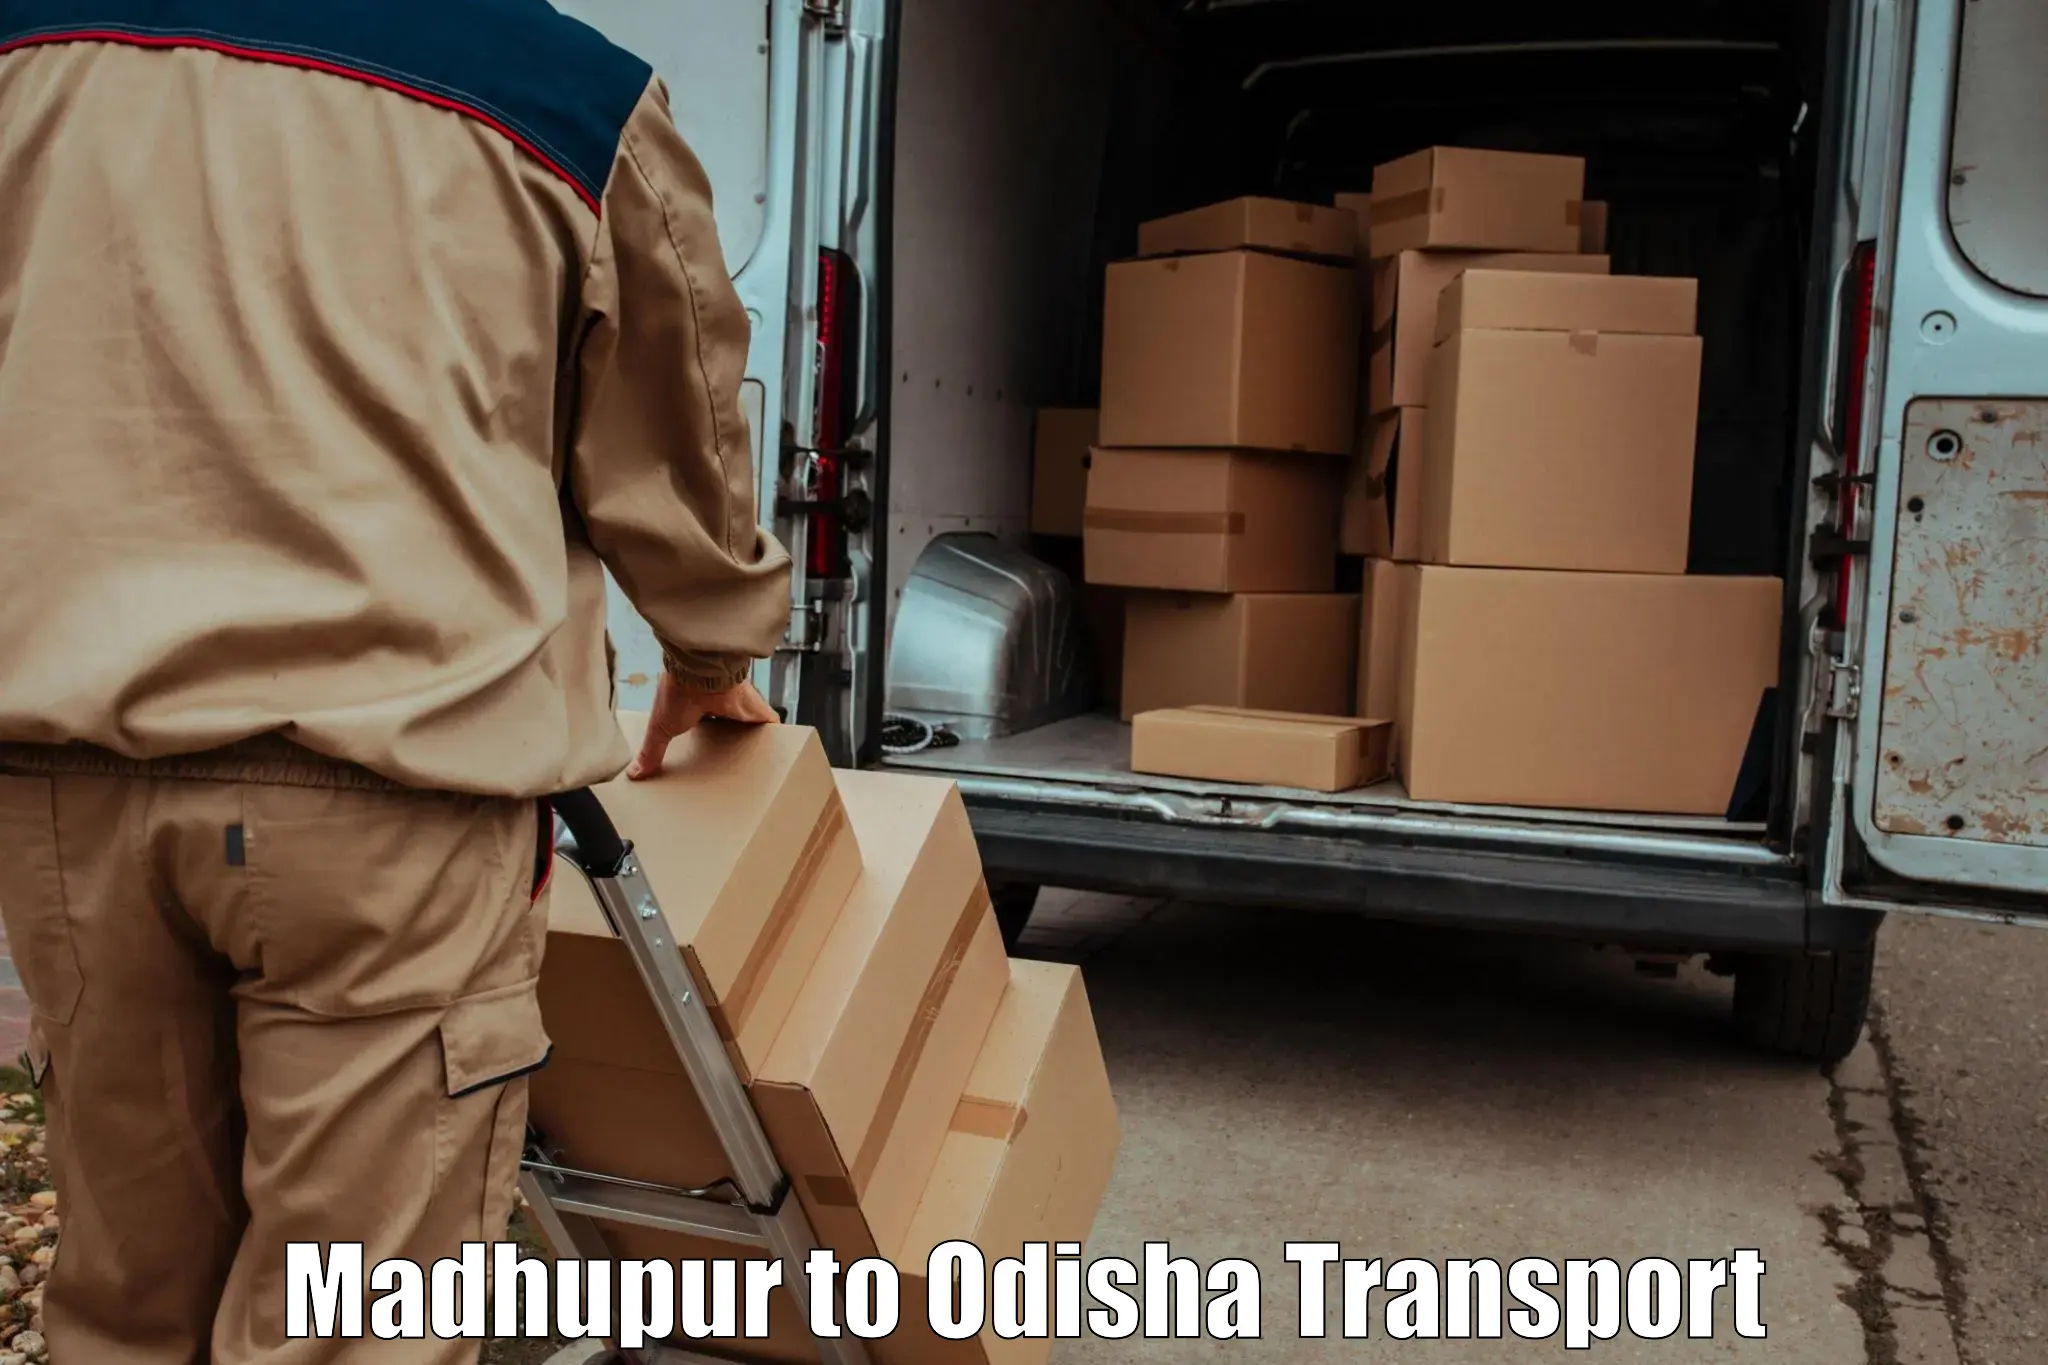 Bike shipping service Madhupur to Patkura